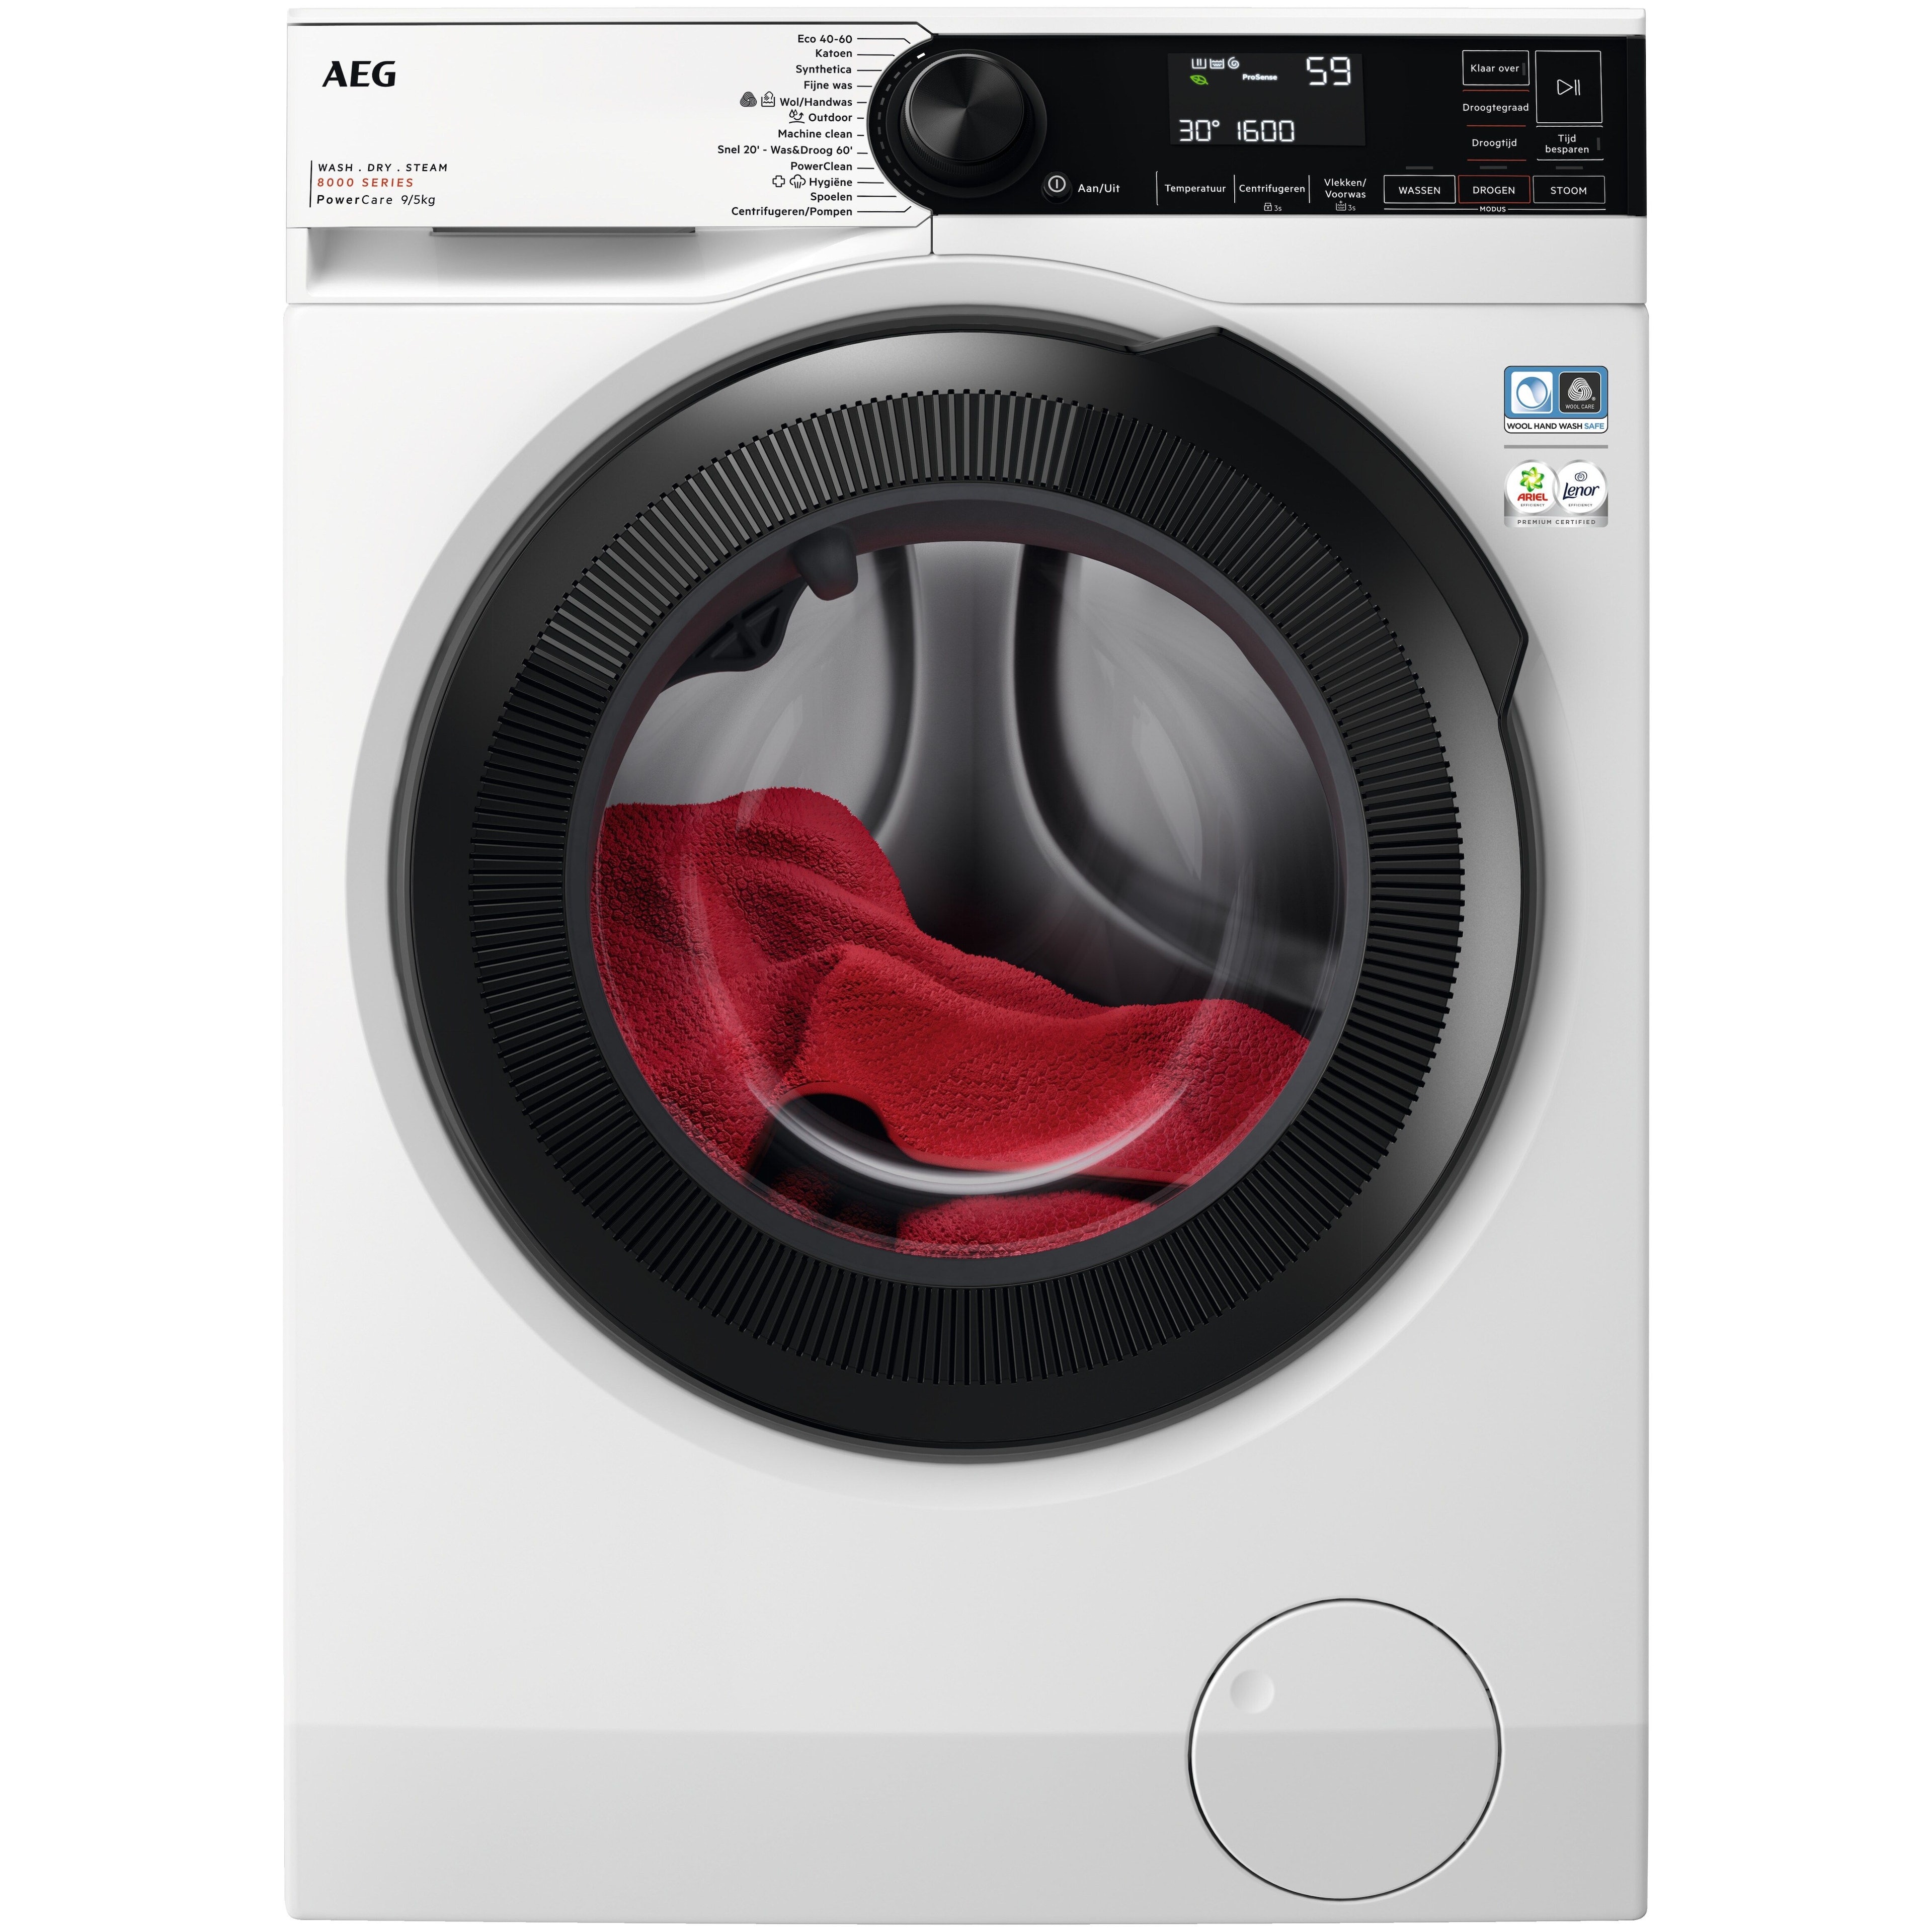 AEG LWR8596 wasmachine afbeelding 1